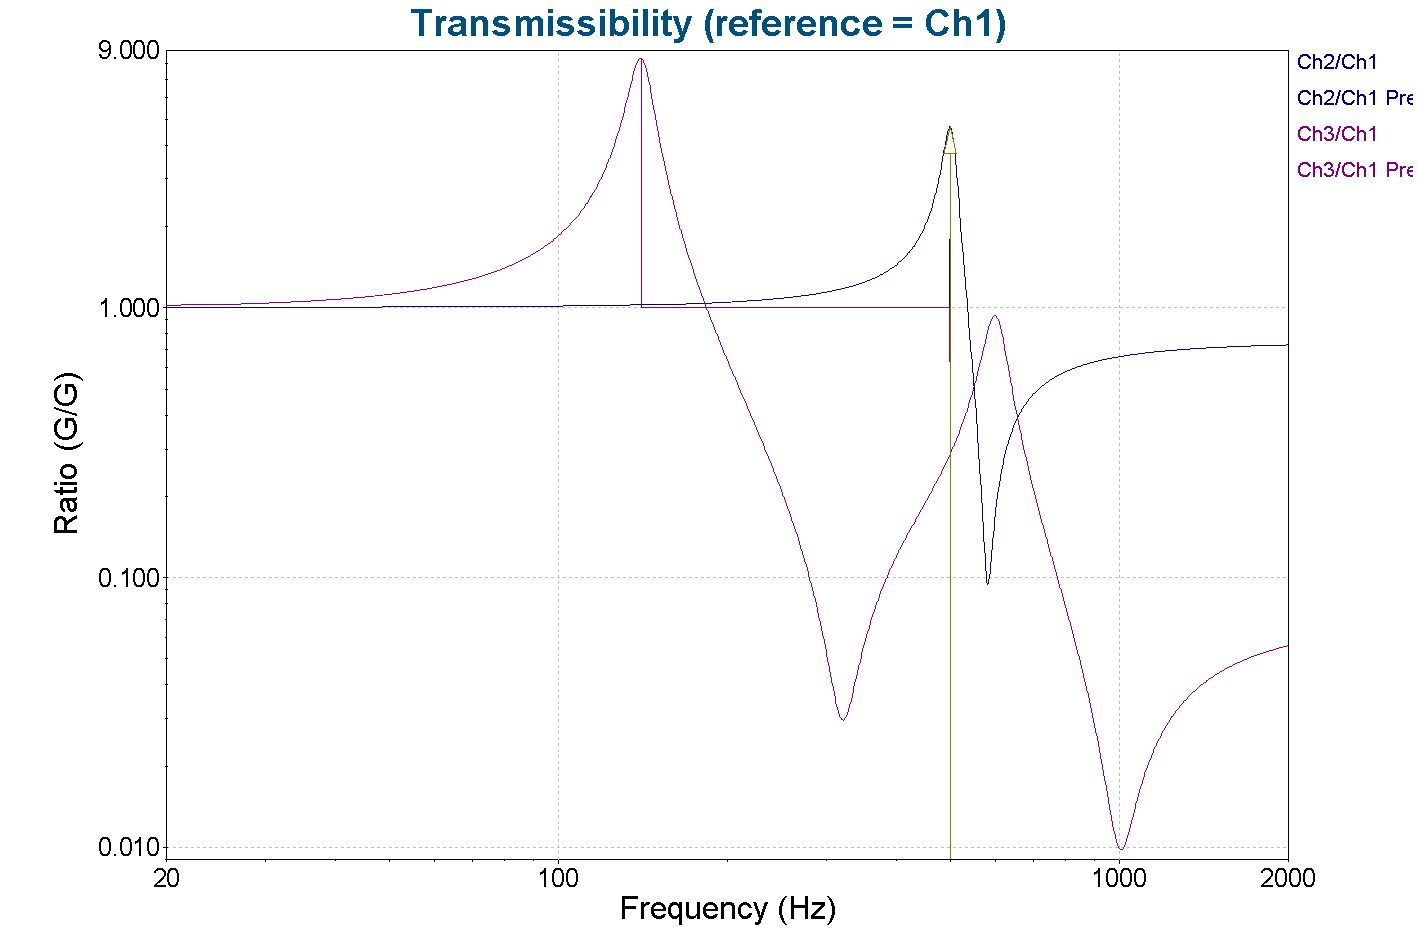 Simple SRTD test transmissibility